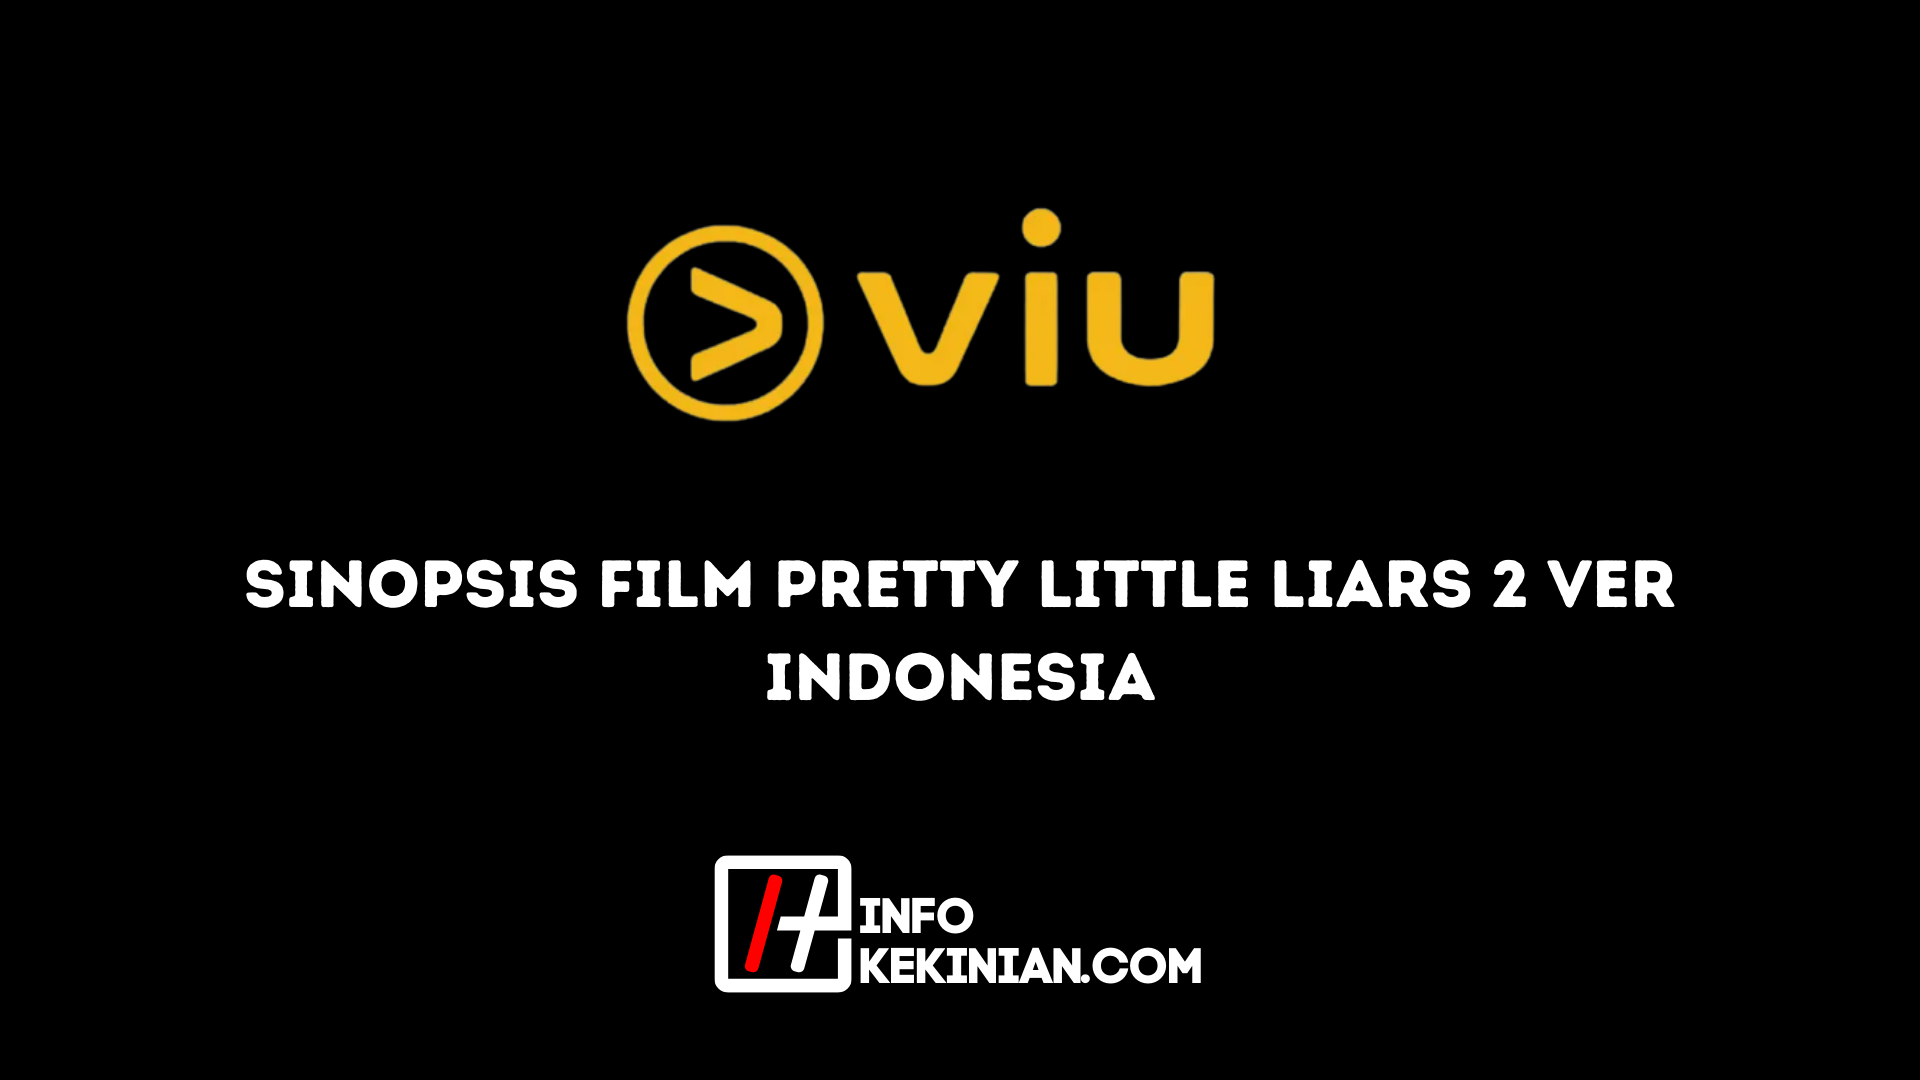 Inhaltsangabe Film Pretty Little Liars 2 Indonesische Ver